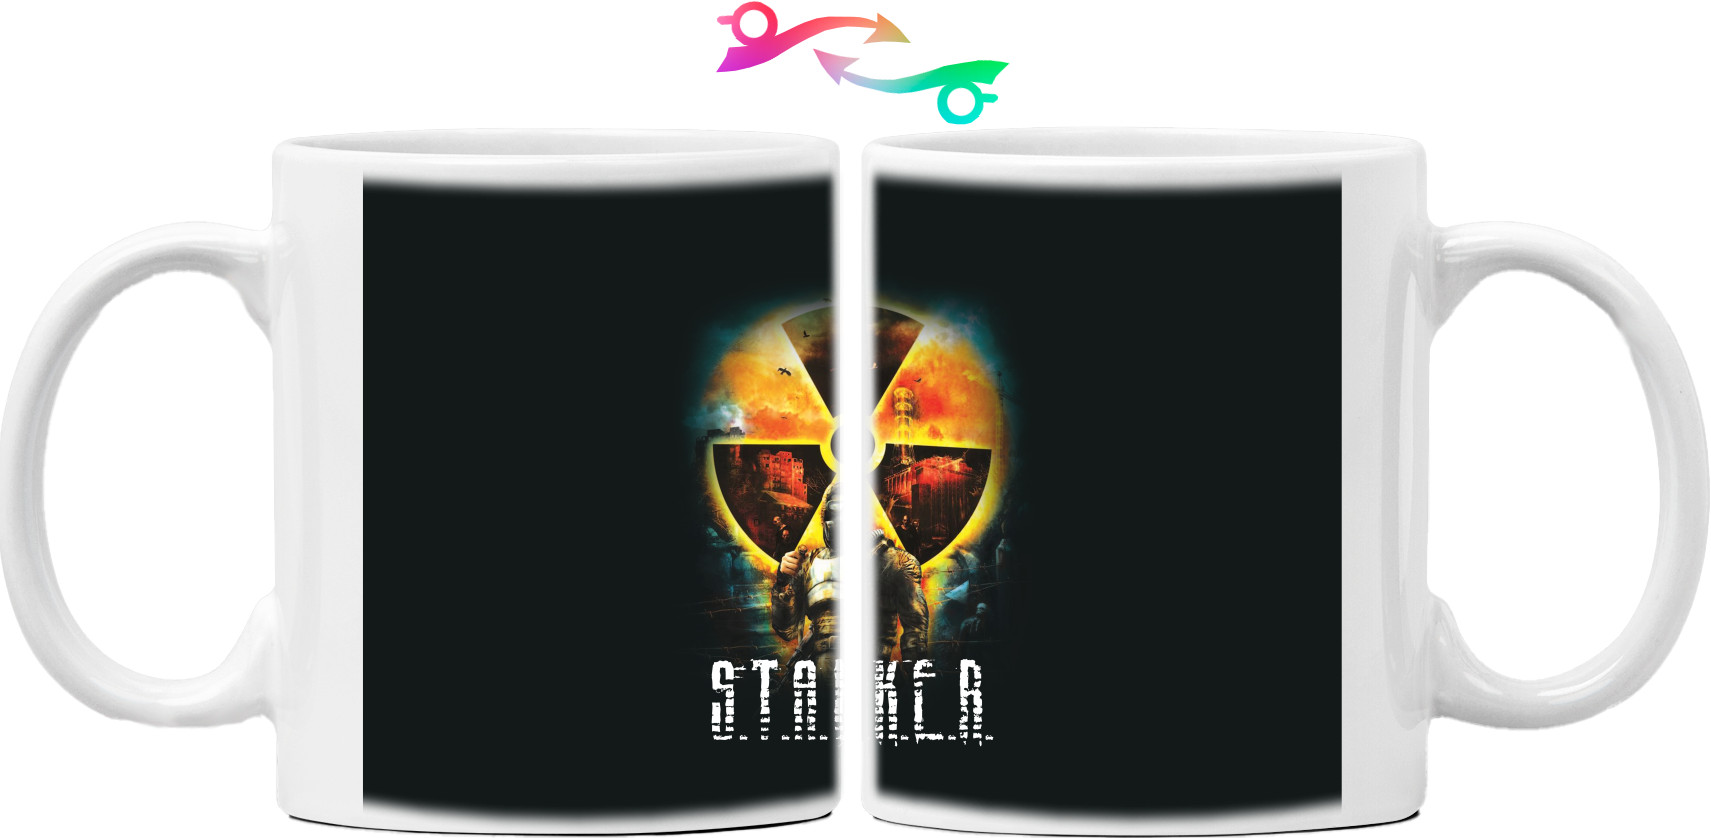 Stalker - Кружка - Stalker (1) - Mfest